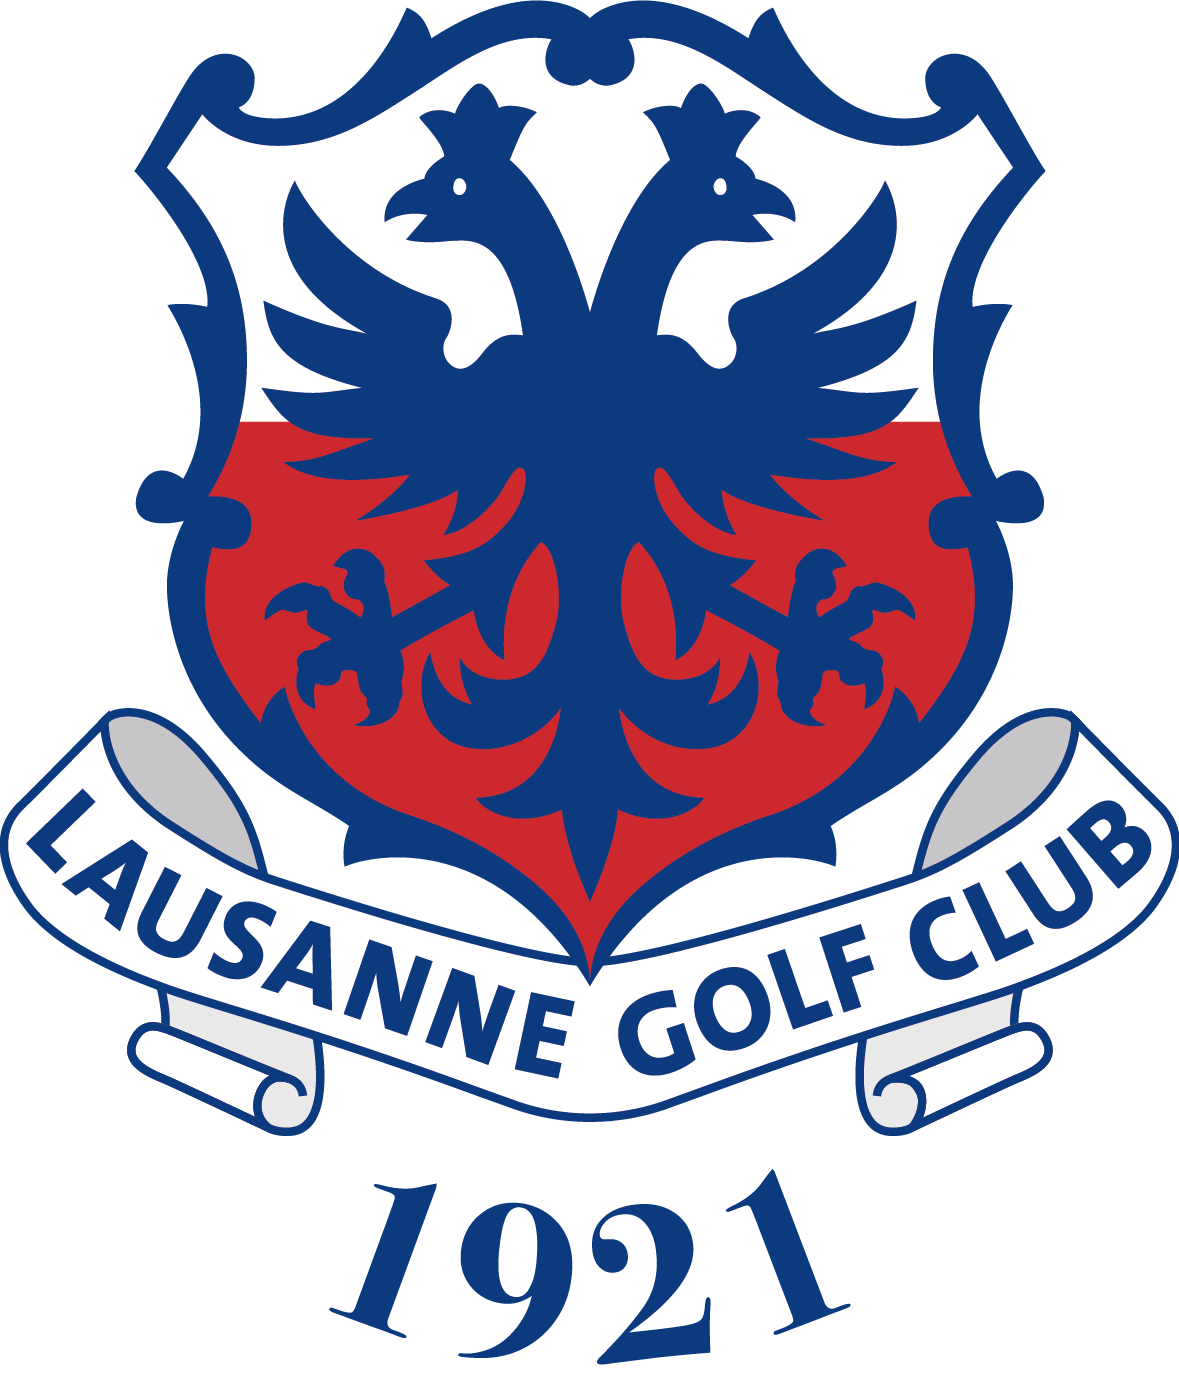 Lausanne Golf Club